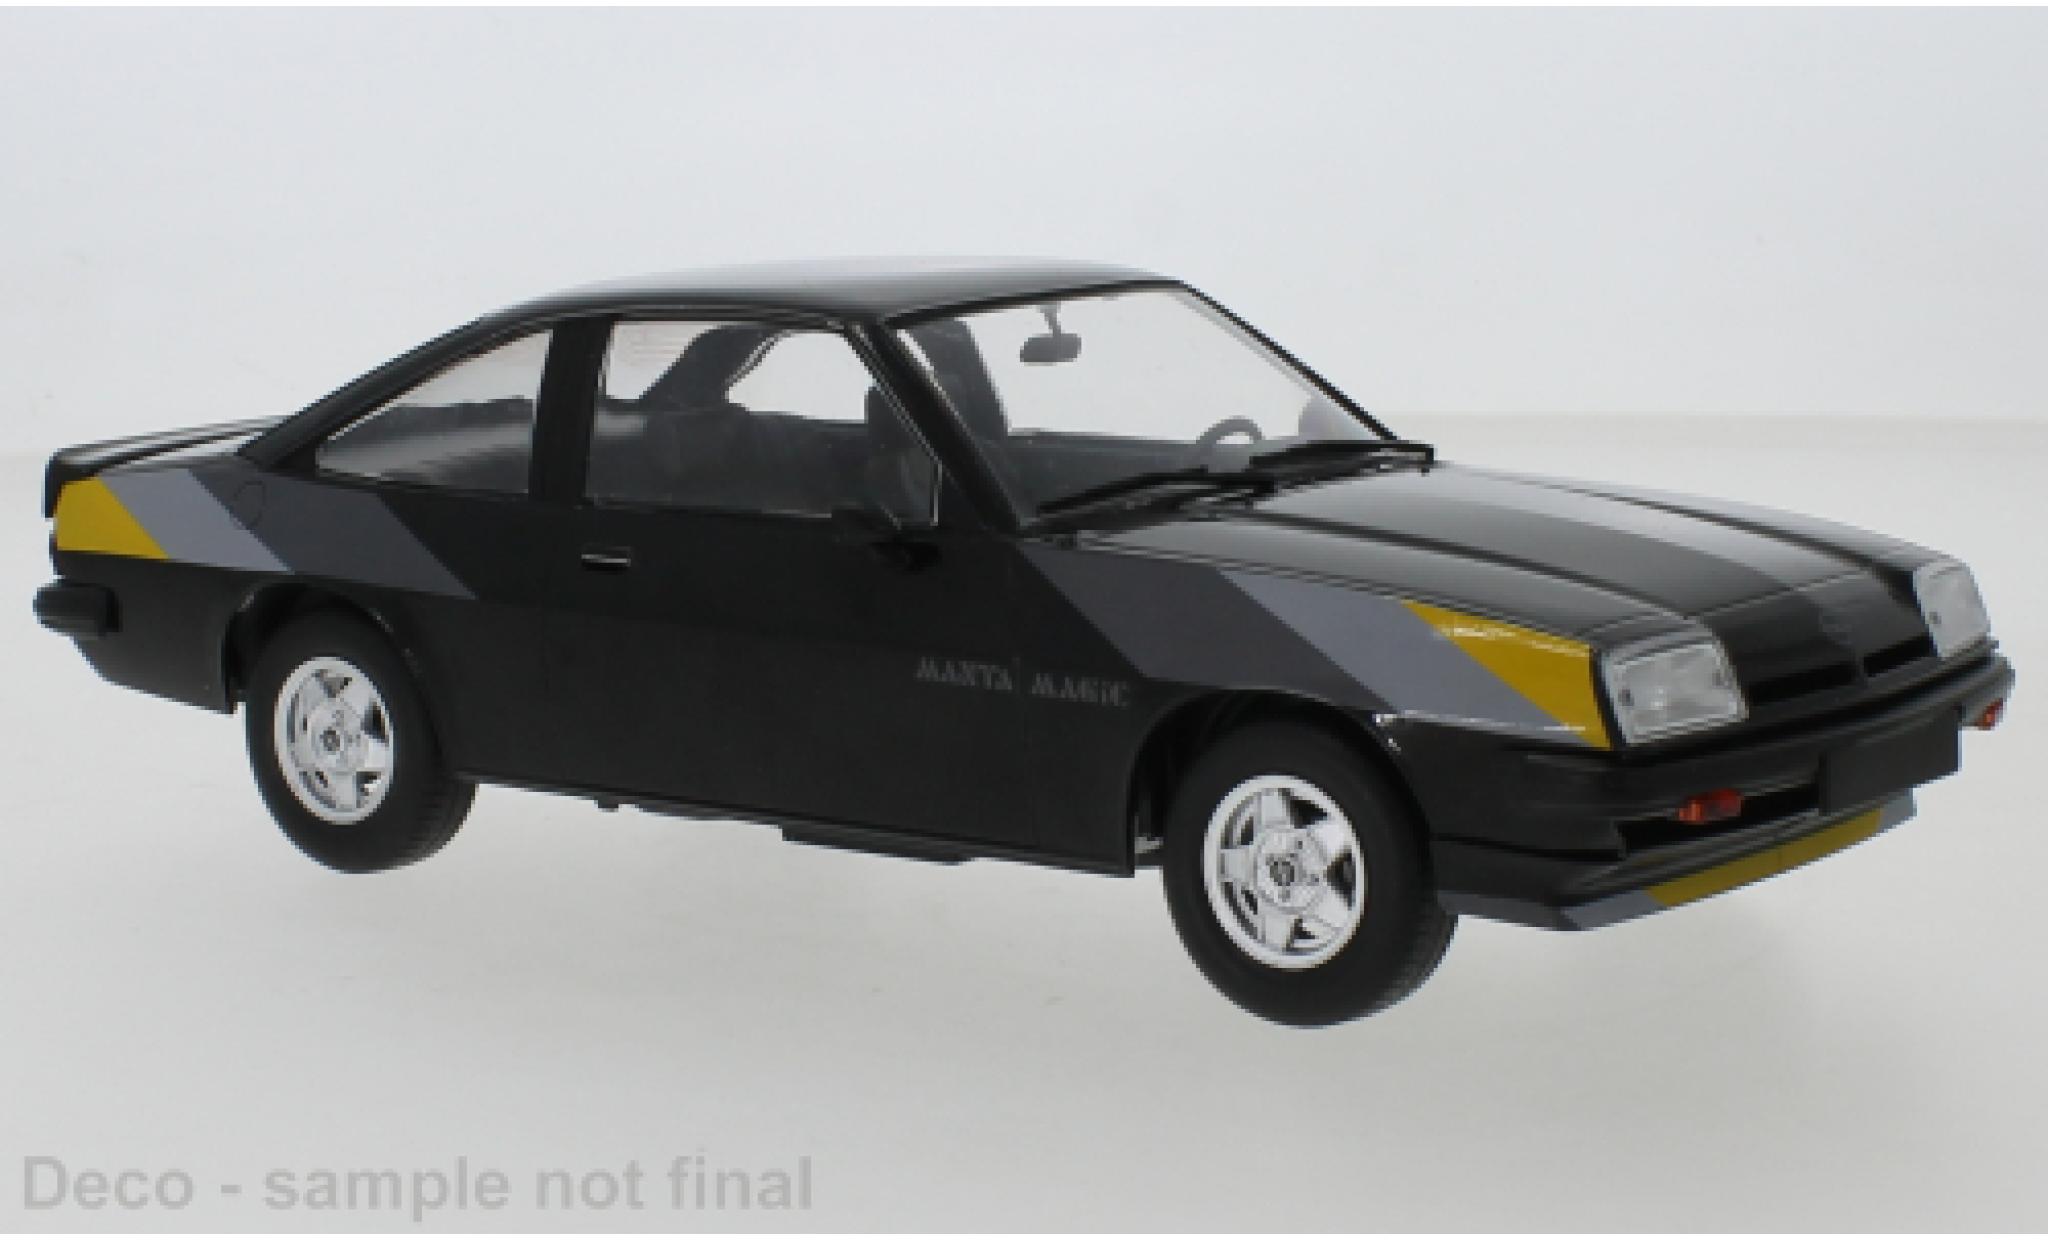 Opel Manta 1/18 MCG B Magic black 1980